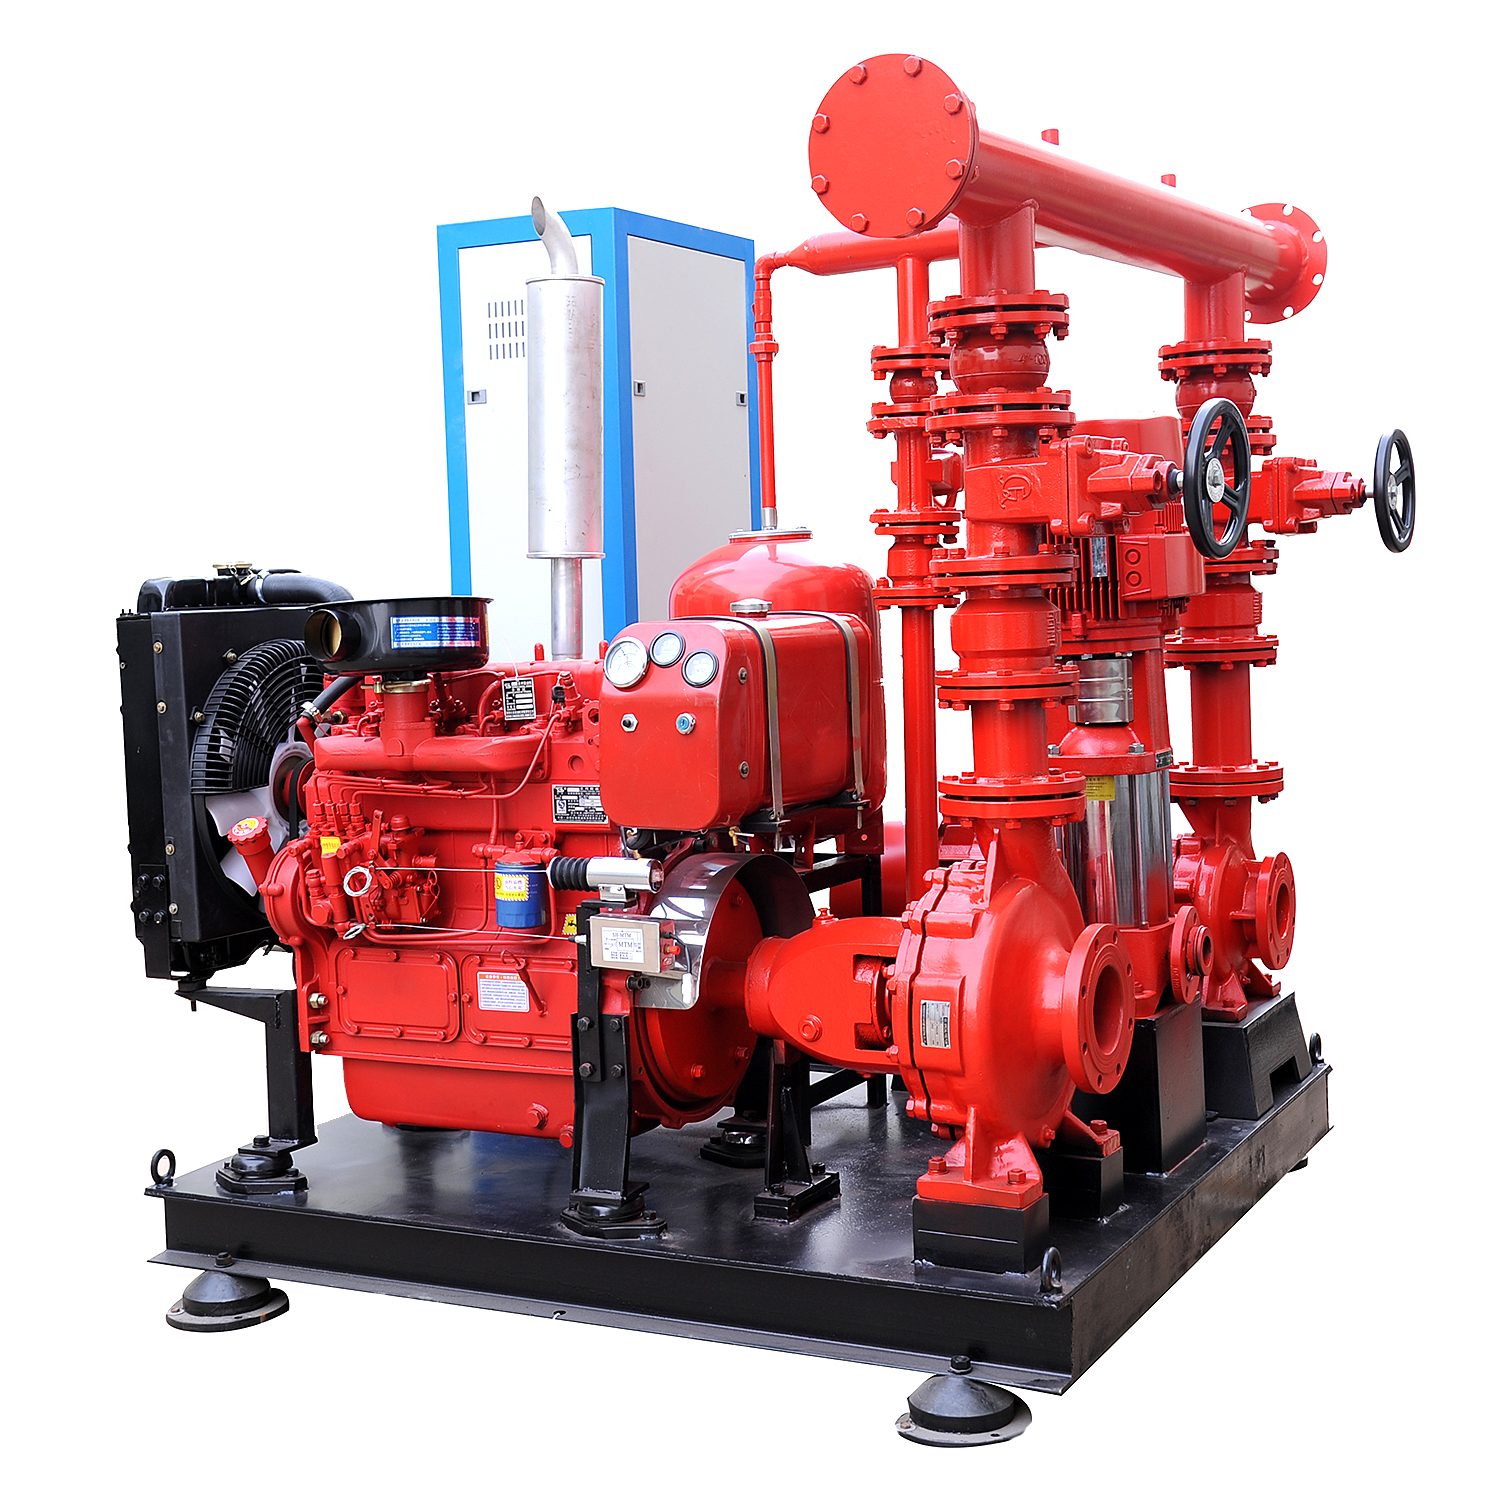 EDJ 系列撬装消防泵系统用于消防 500GPM